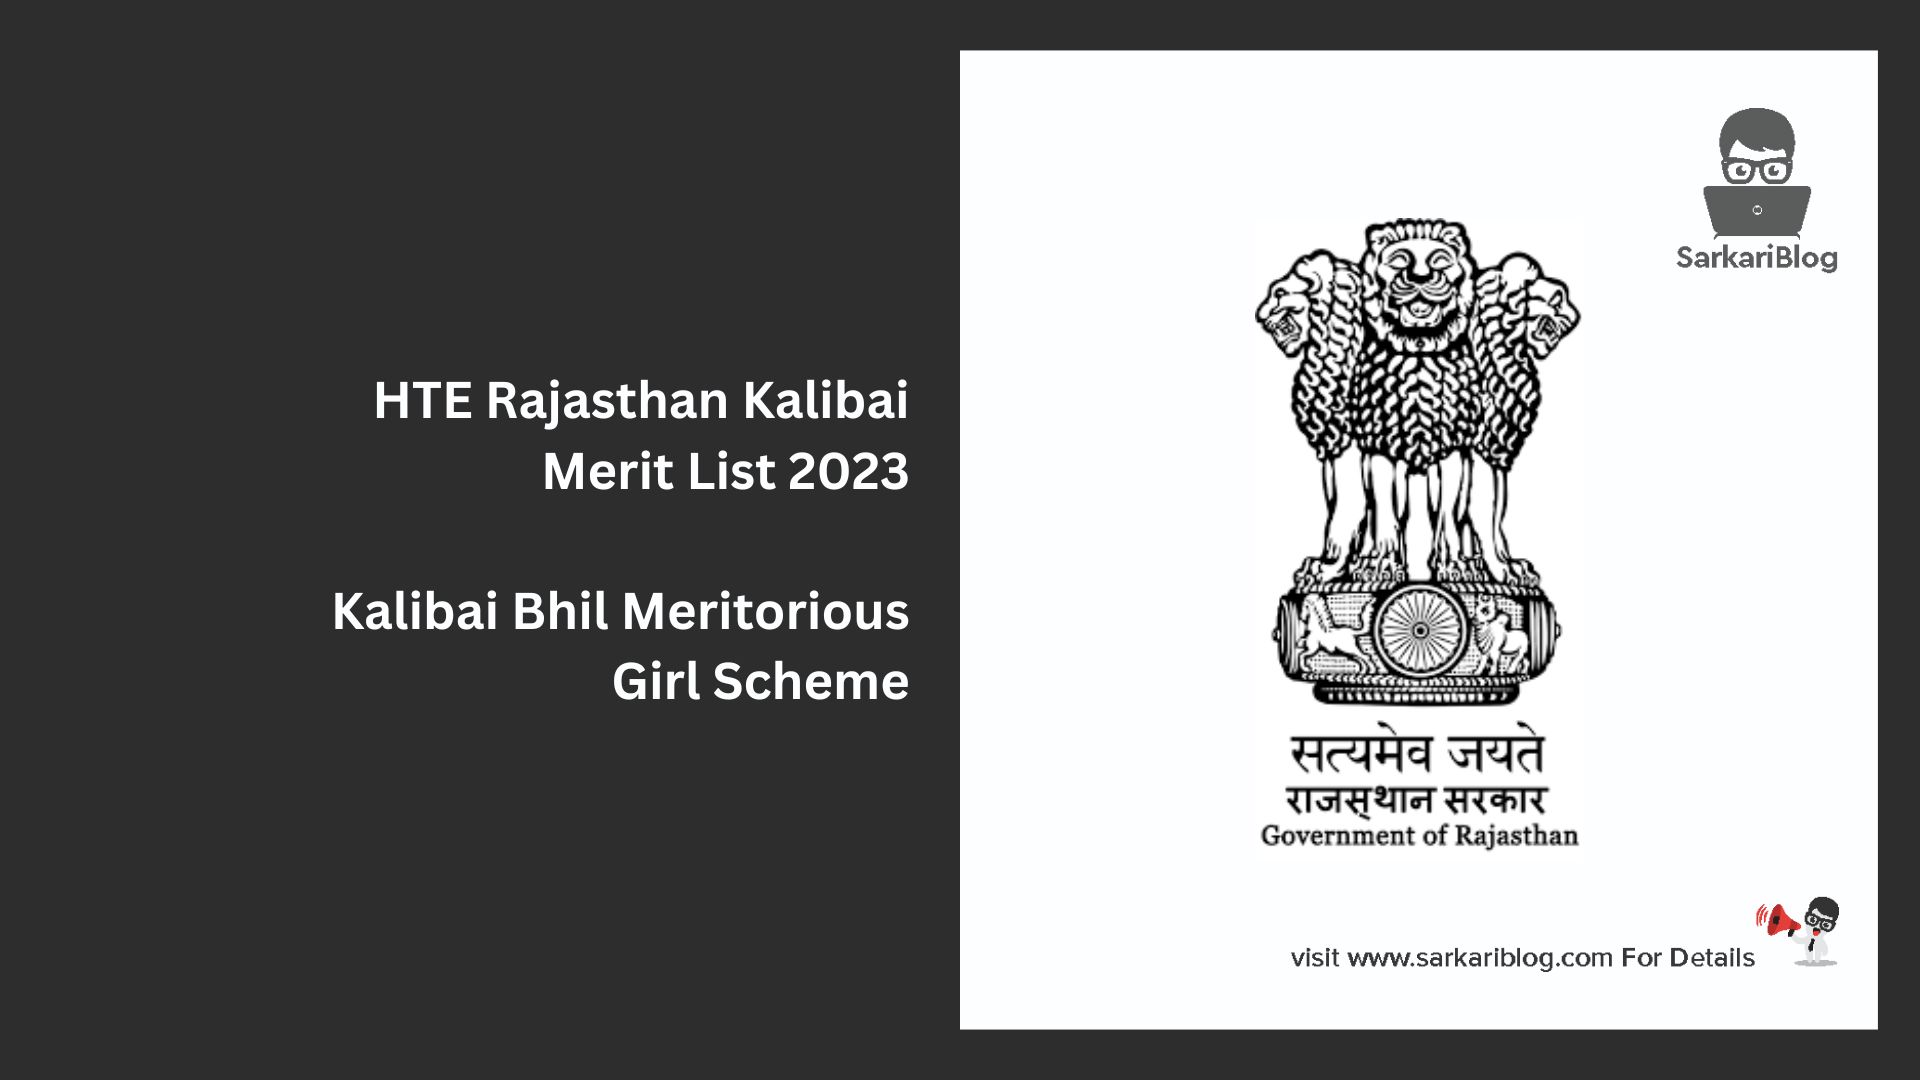 HTE Rajasthan Kalibai Merit List 2023